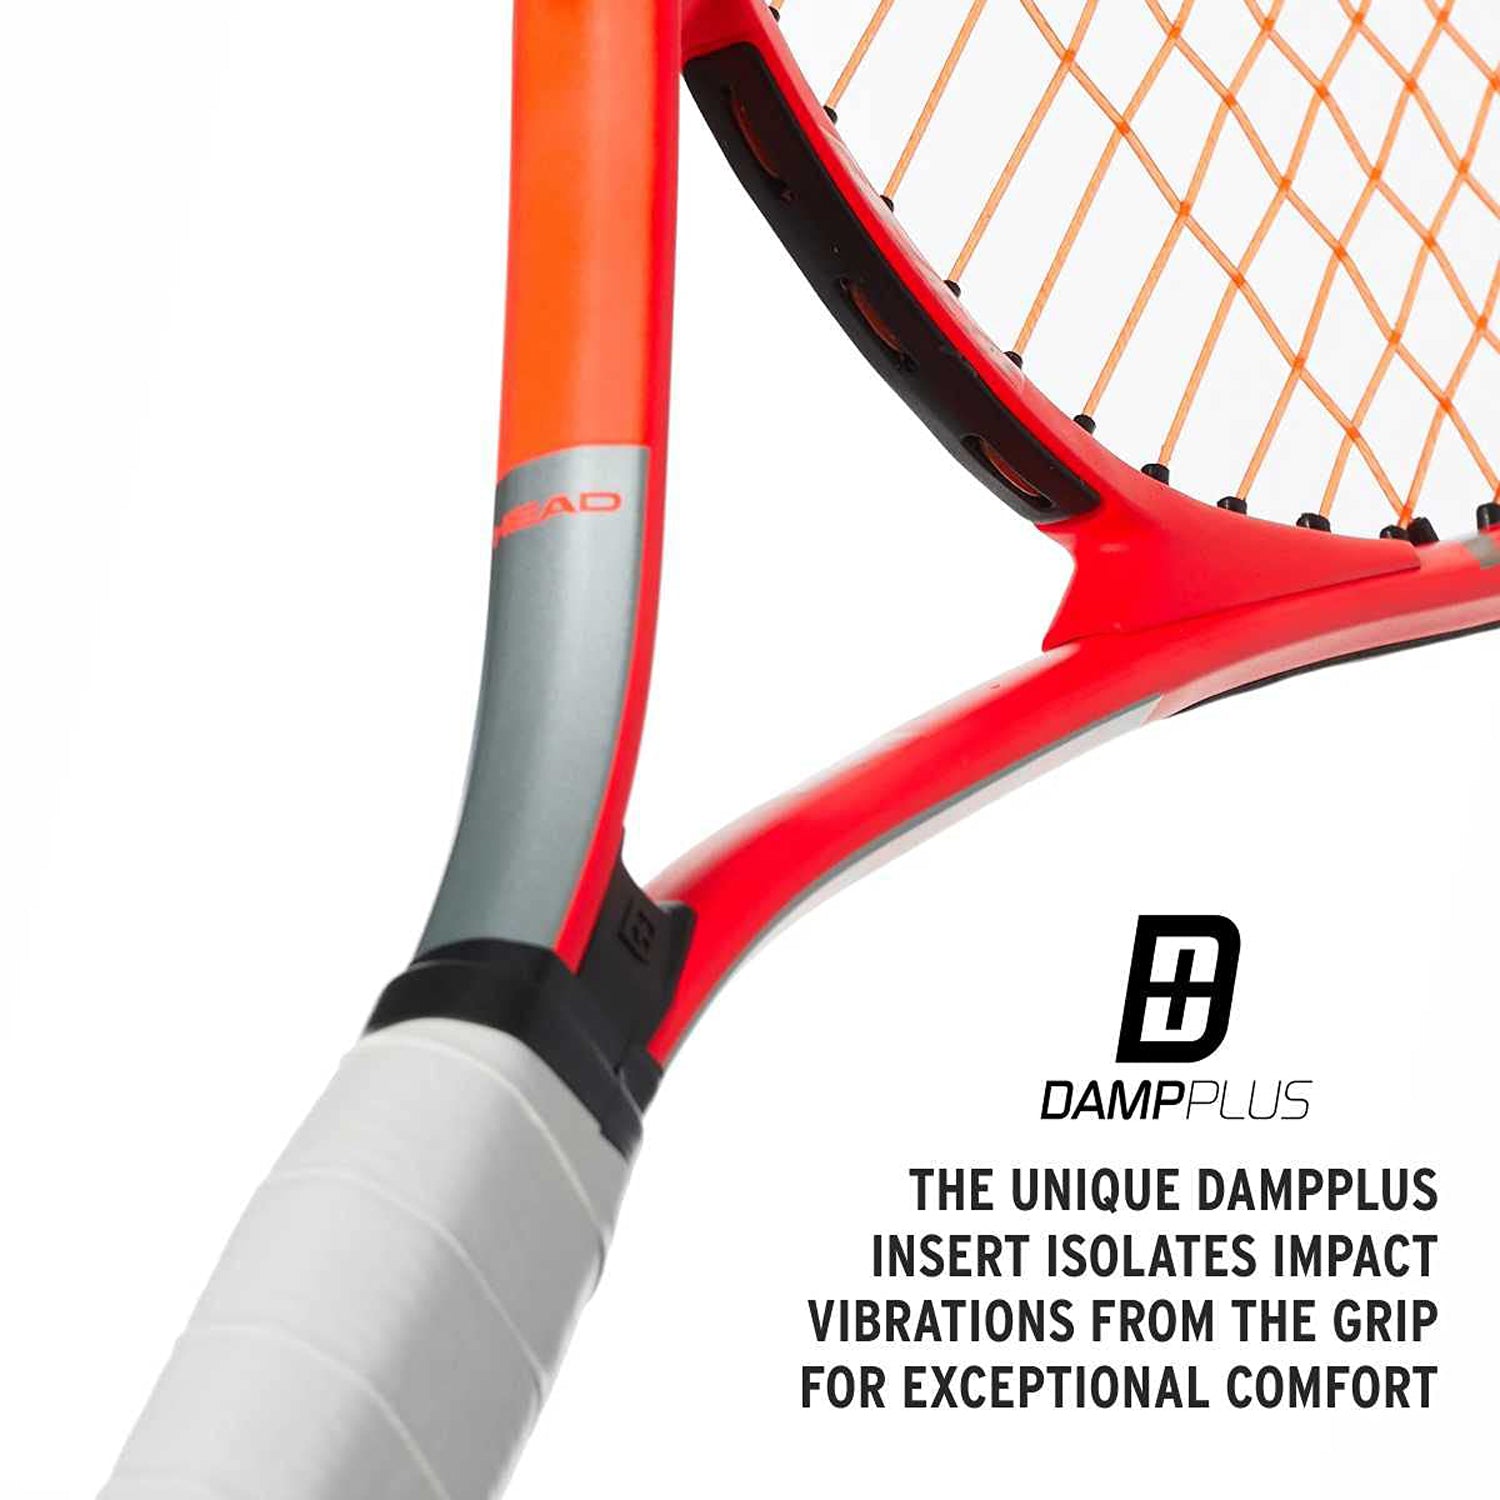 HEAD Radical 26 Strung Tennis Racquet for Juniors, 4/7-8 - Best Price online Prokicksports.com